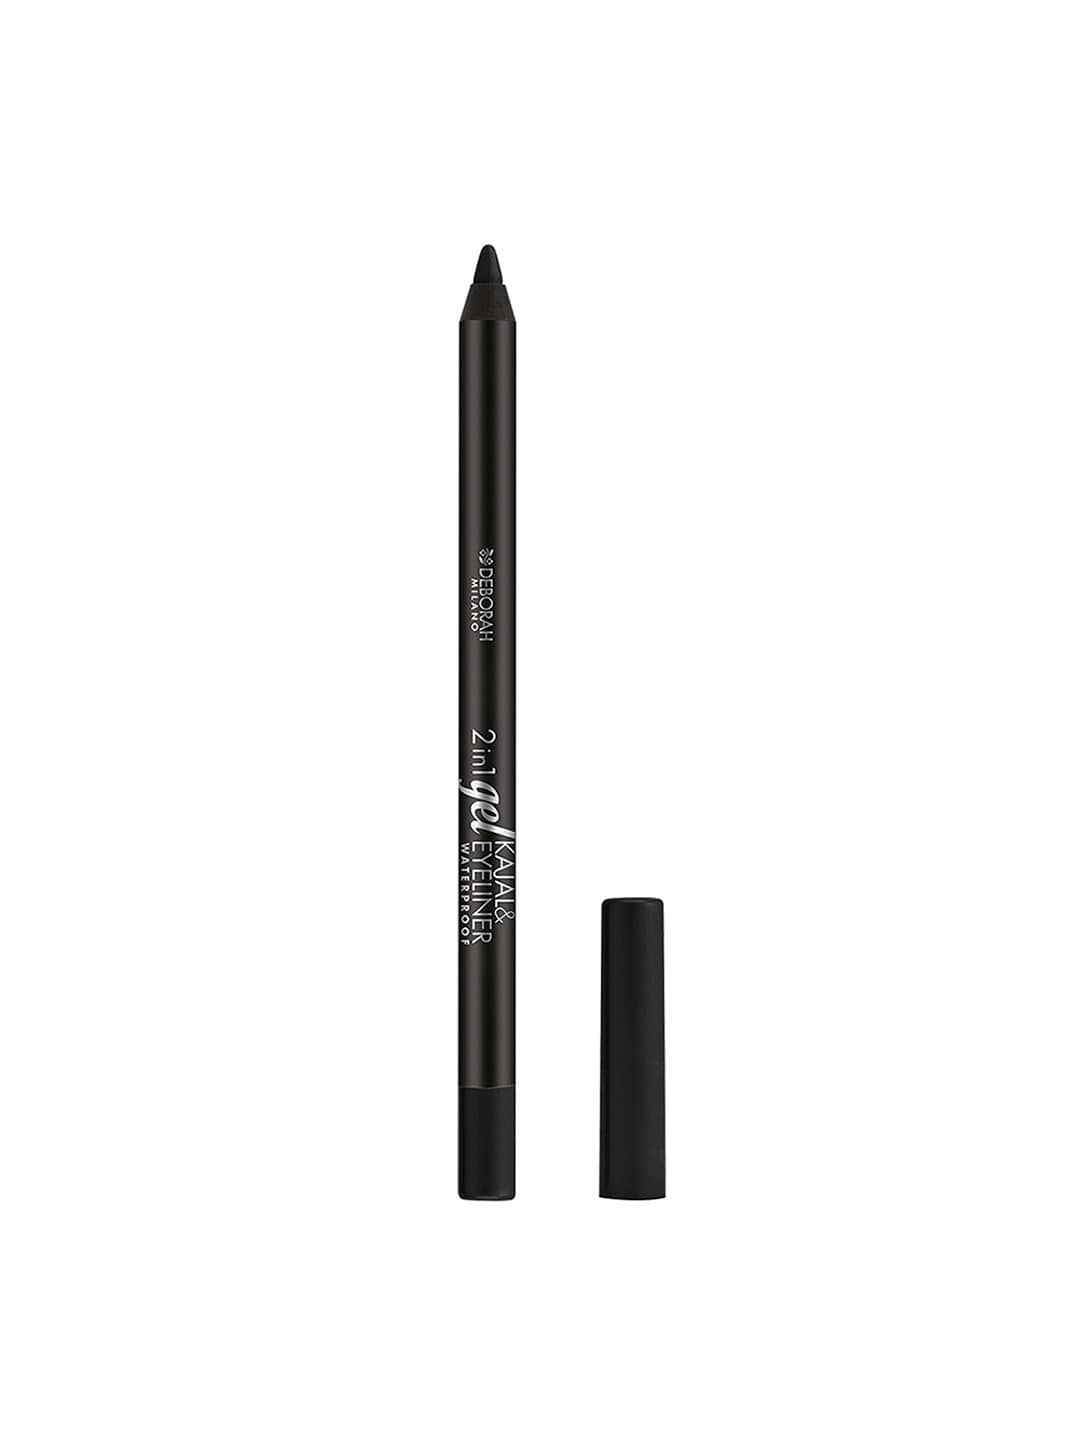 Deborah Milano 2-in-1 Gel Waterproof Black Kajal & Eyeliner Pencil 01 Price in India